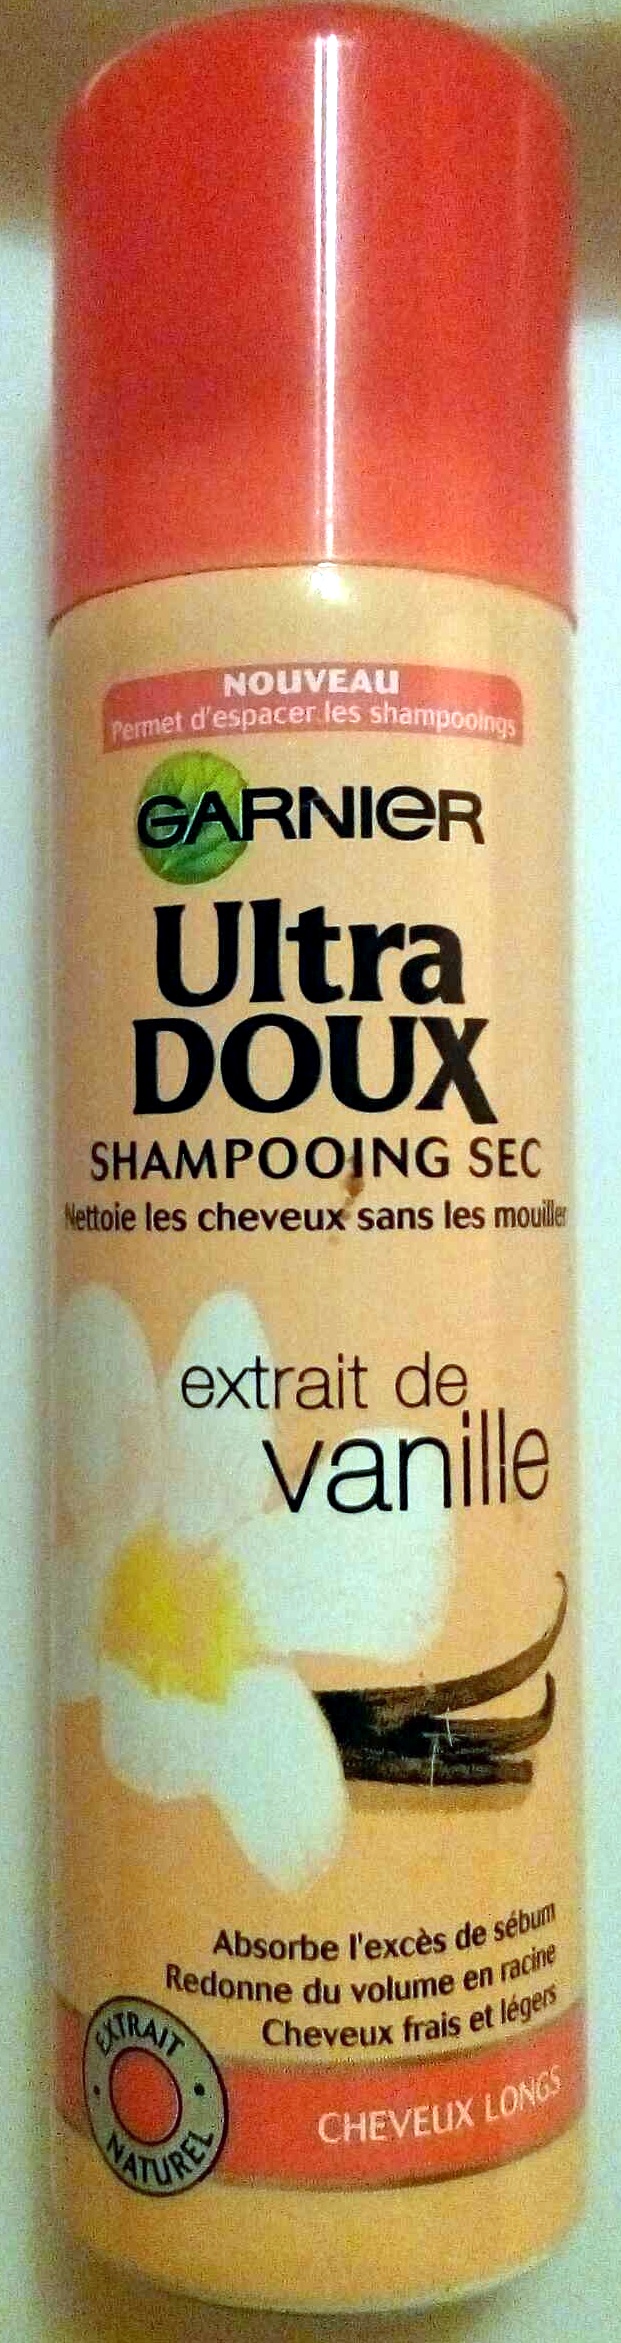 Shampooing sec extrait de vanille - Product - fr